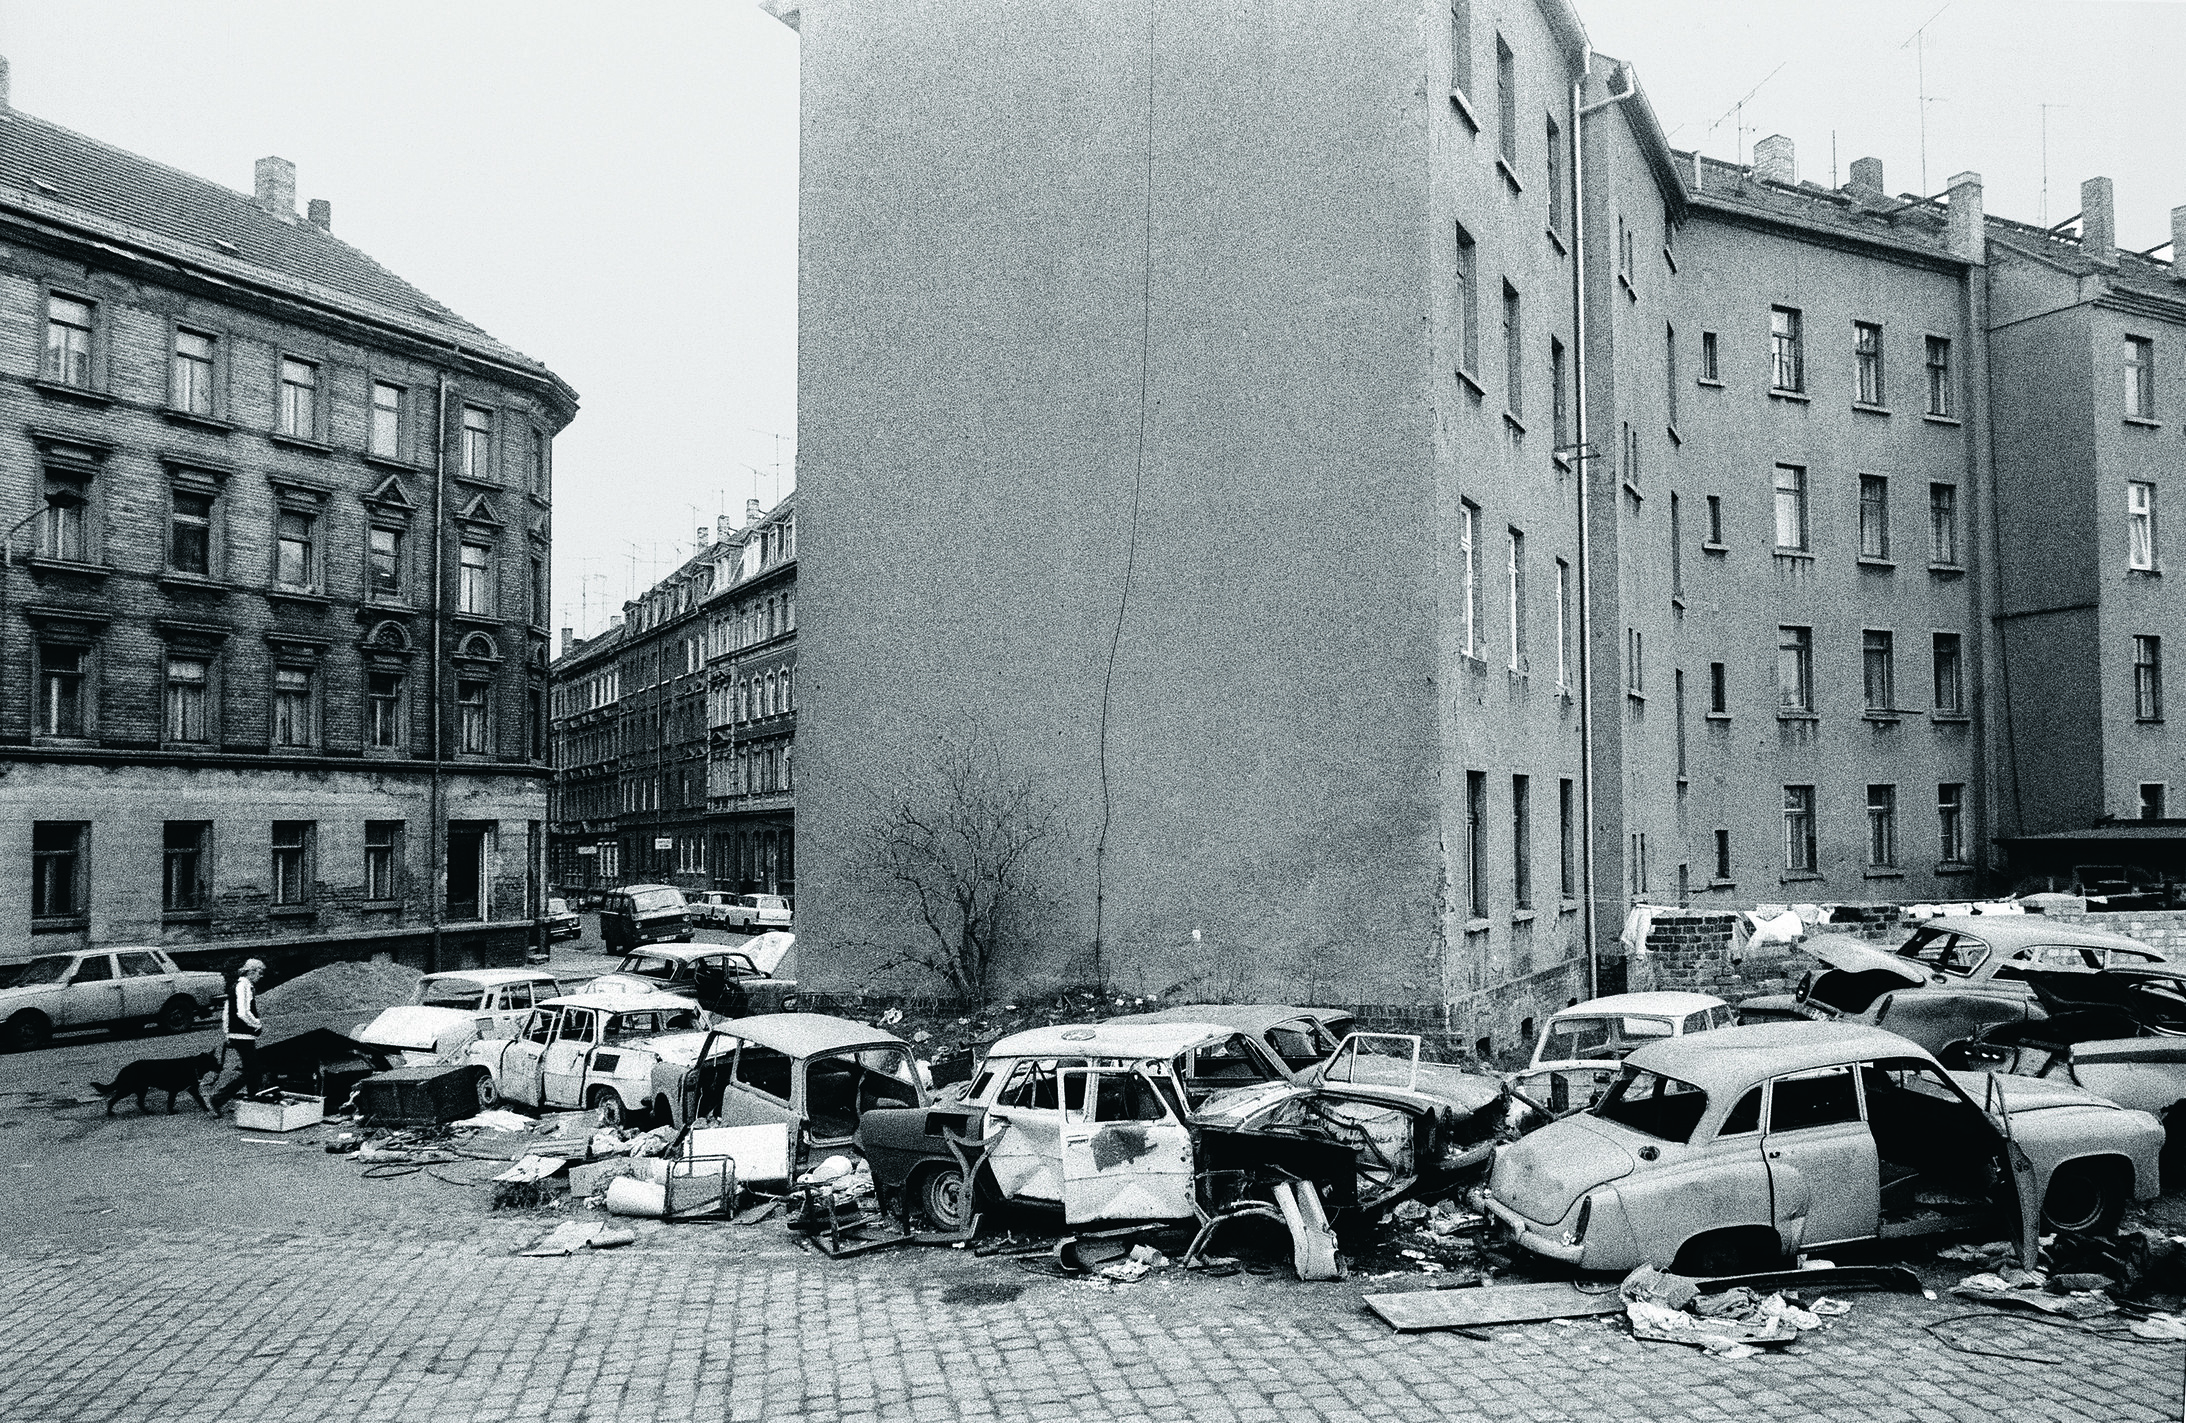 Ausgeweidete DDR-Autos in einem Leipziger Quartier, 1990. Foto: Harald Kirschner